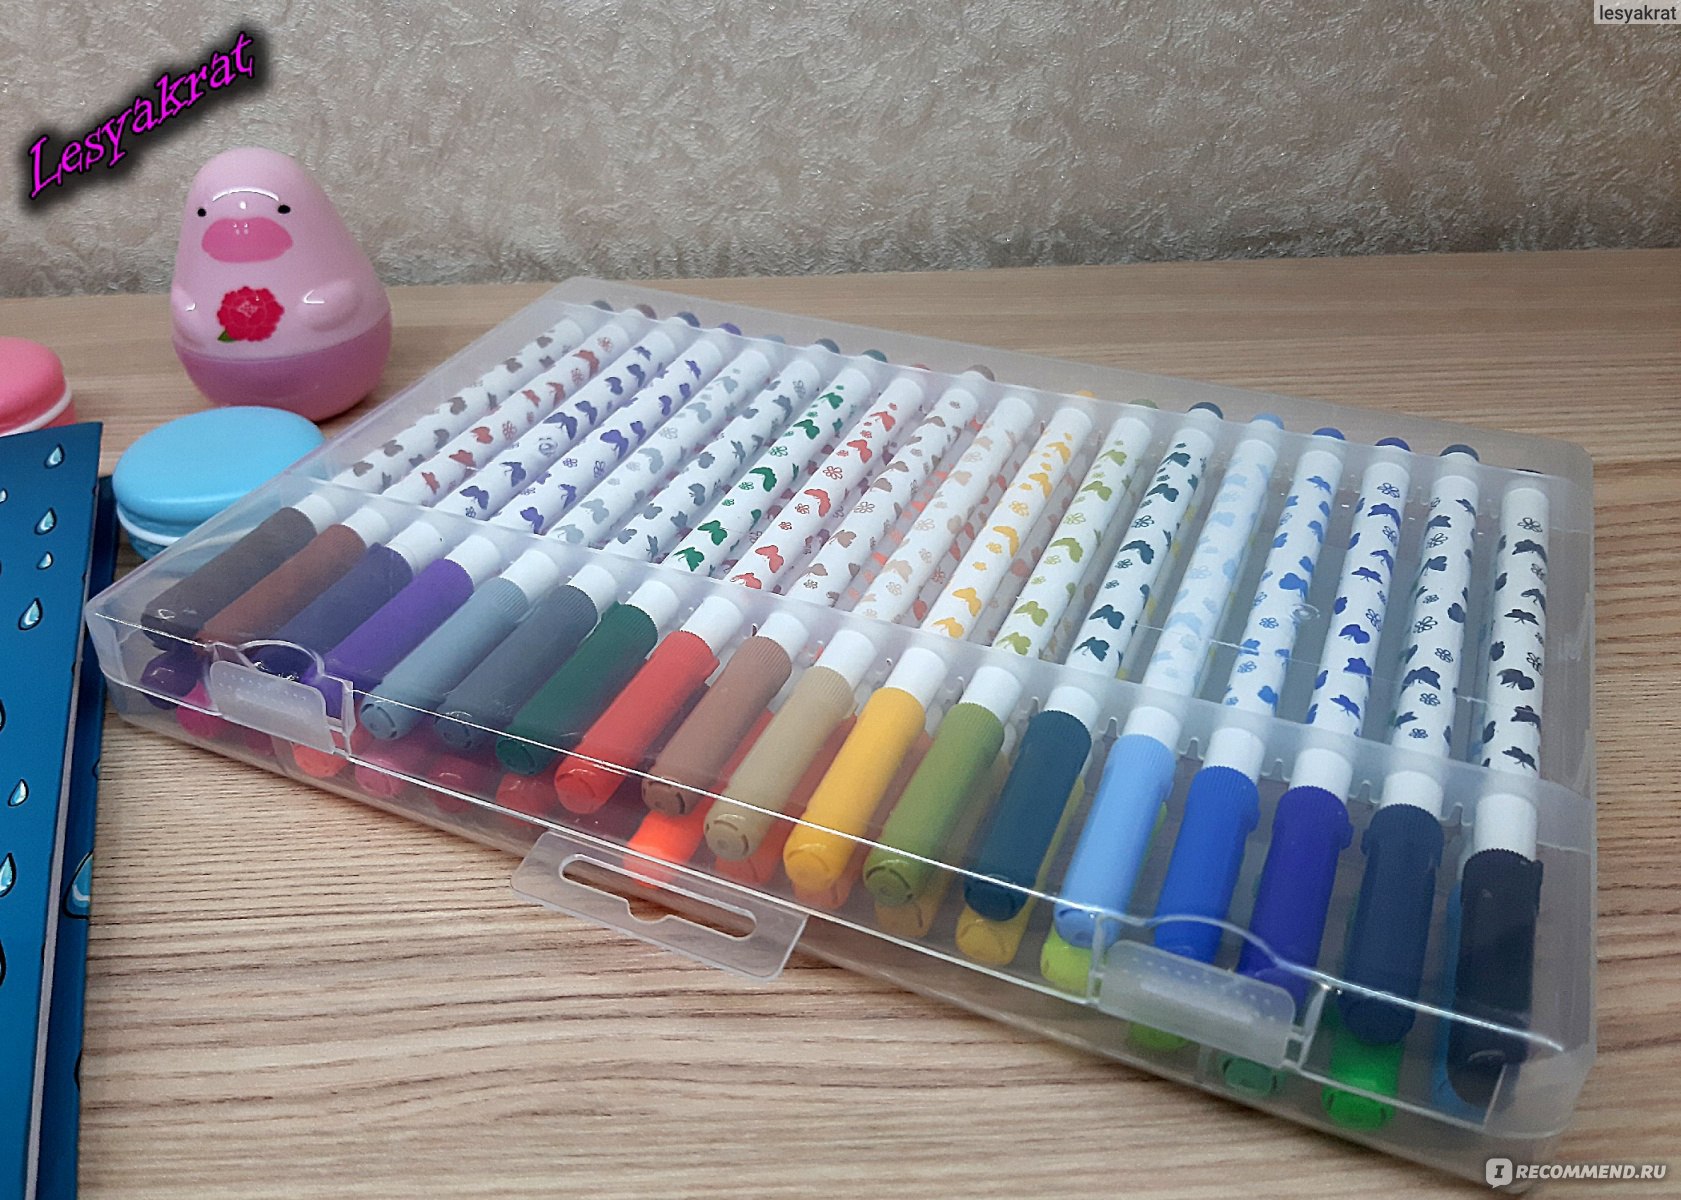 Детский набор для рисования в кейсе, фломастеры + карандаши + краски, 64 предмета(509)